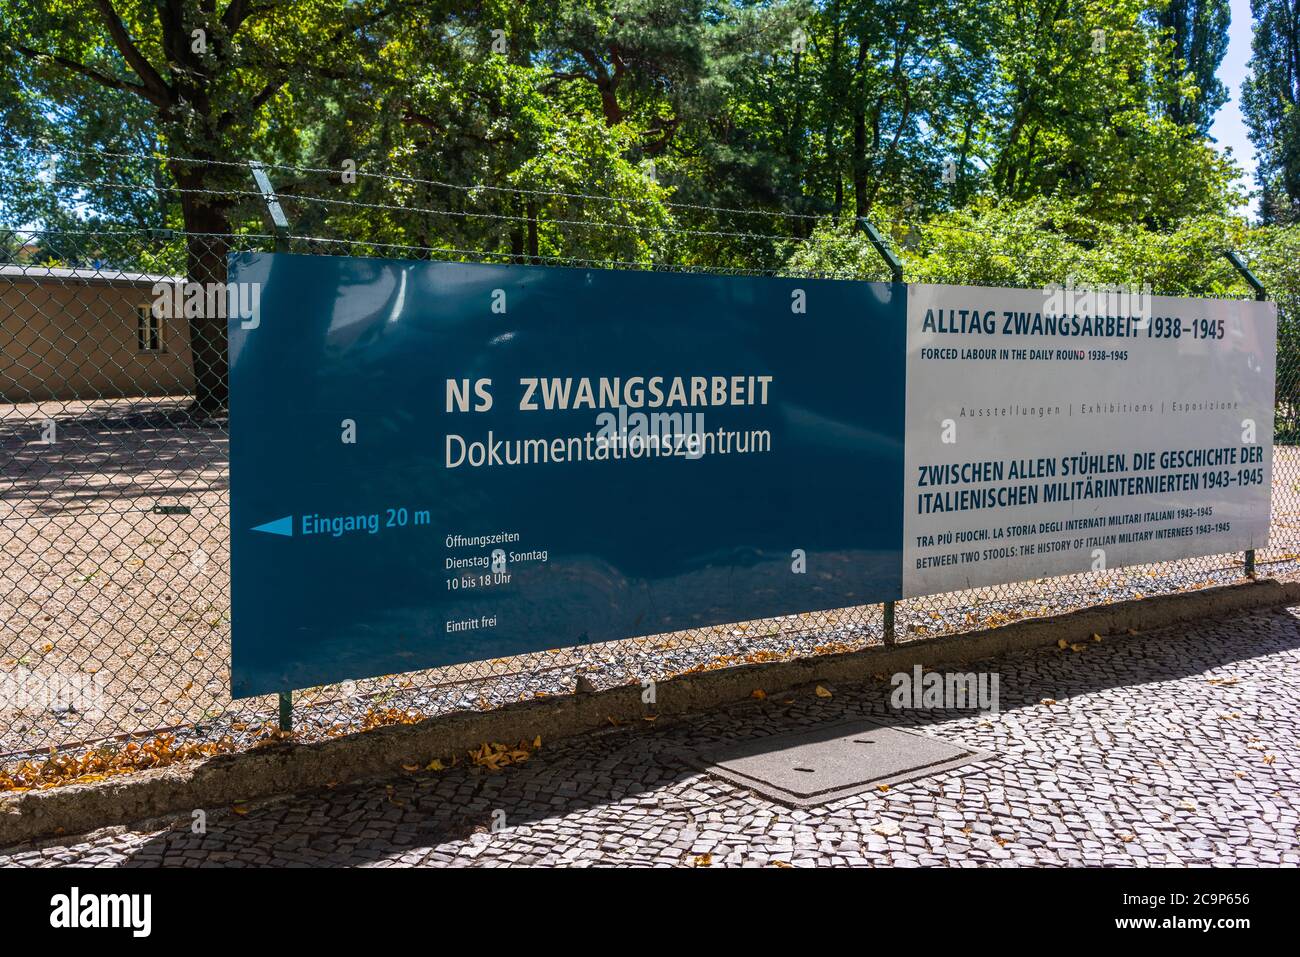 NS Zwangsarbeit Dokumentationszentrum - Centre de documentation du travail forcé à l'époque de l'Allemagne nazie, Berlin Schöneweide, Allemagne Banque D'Images